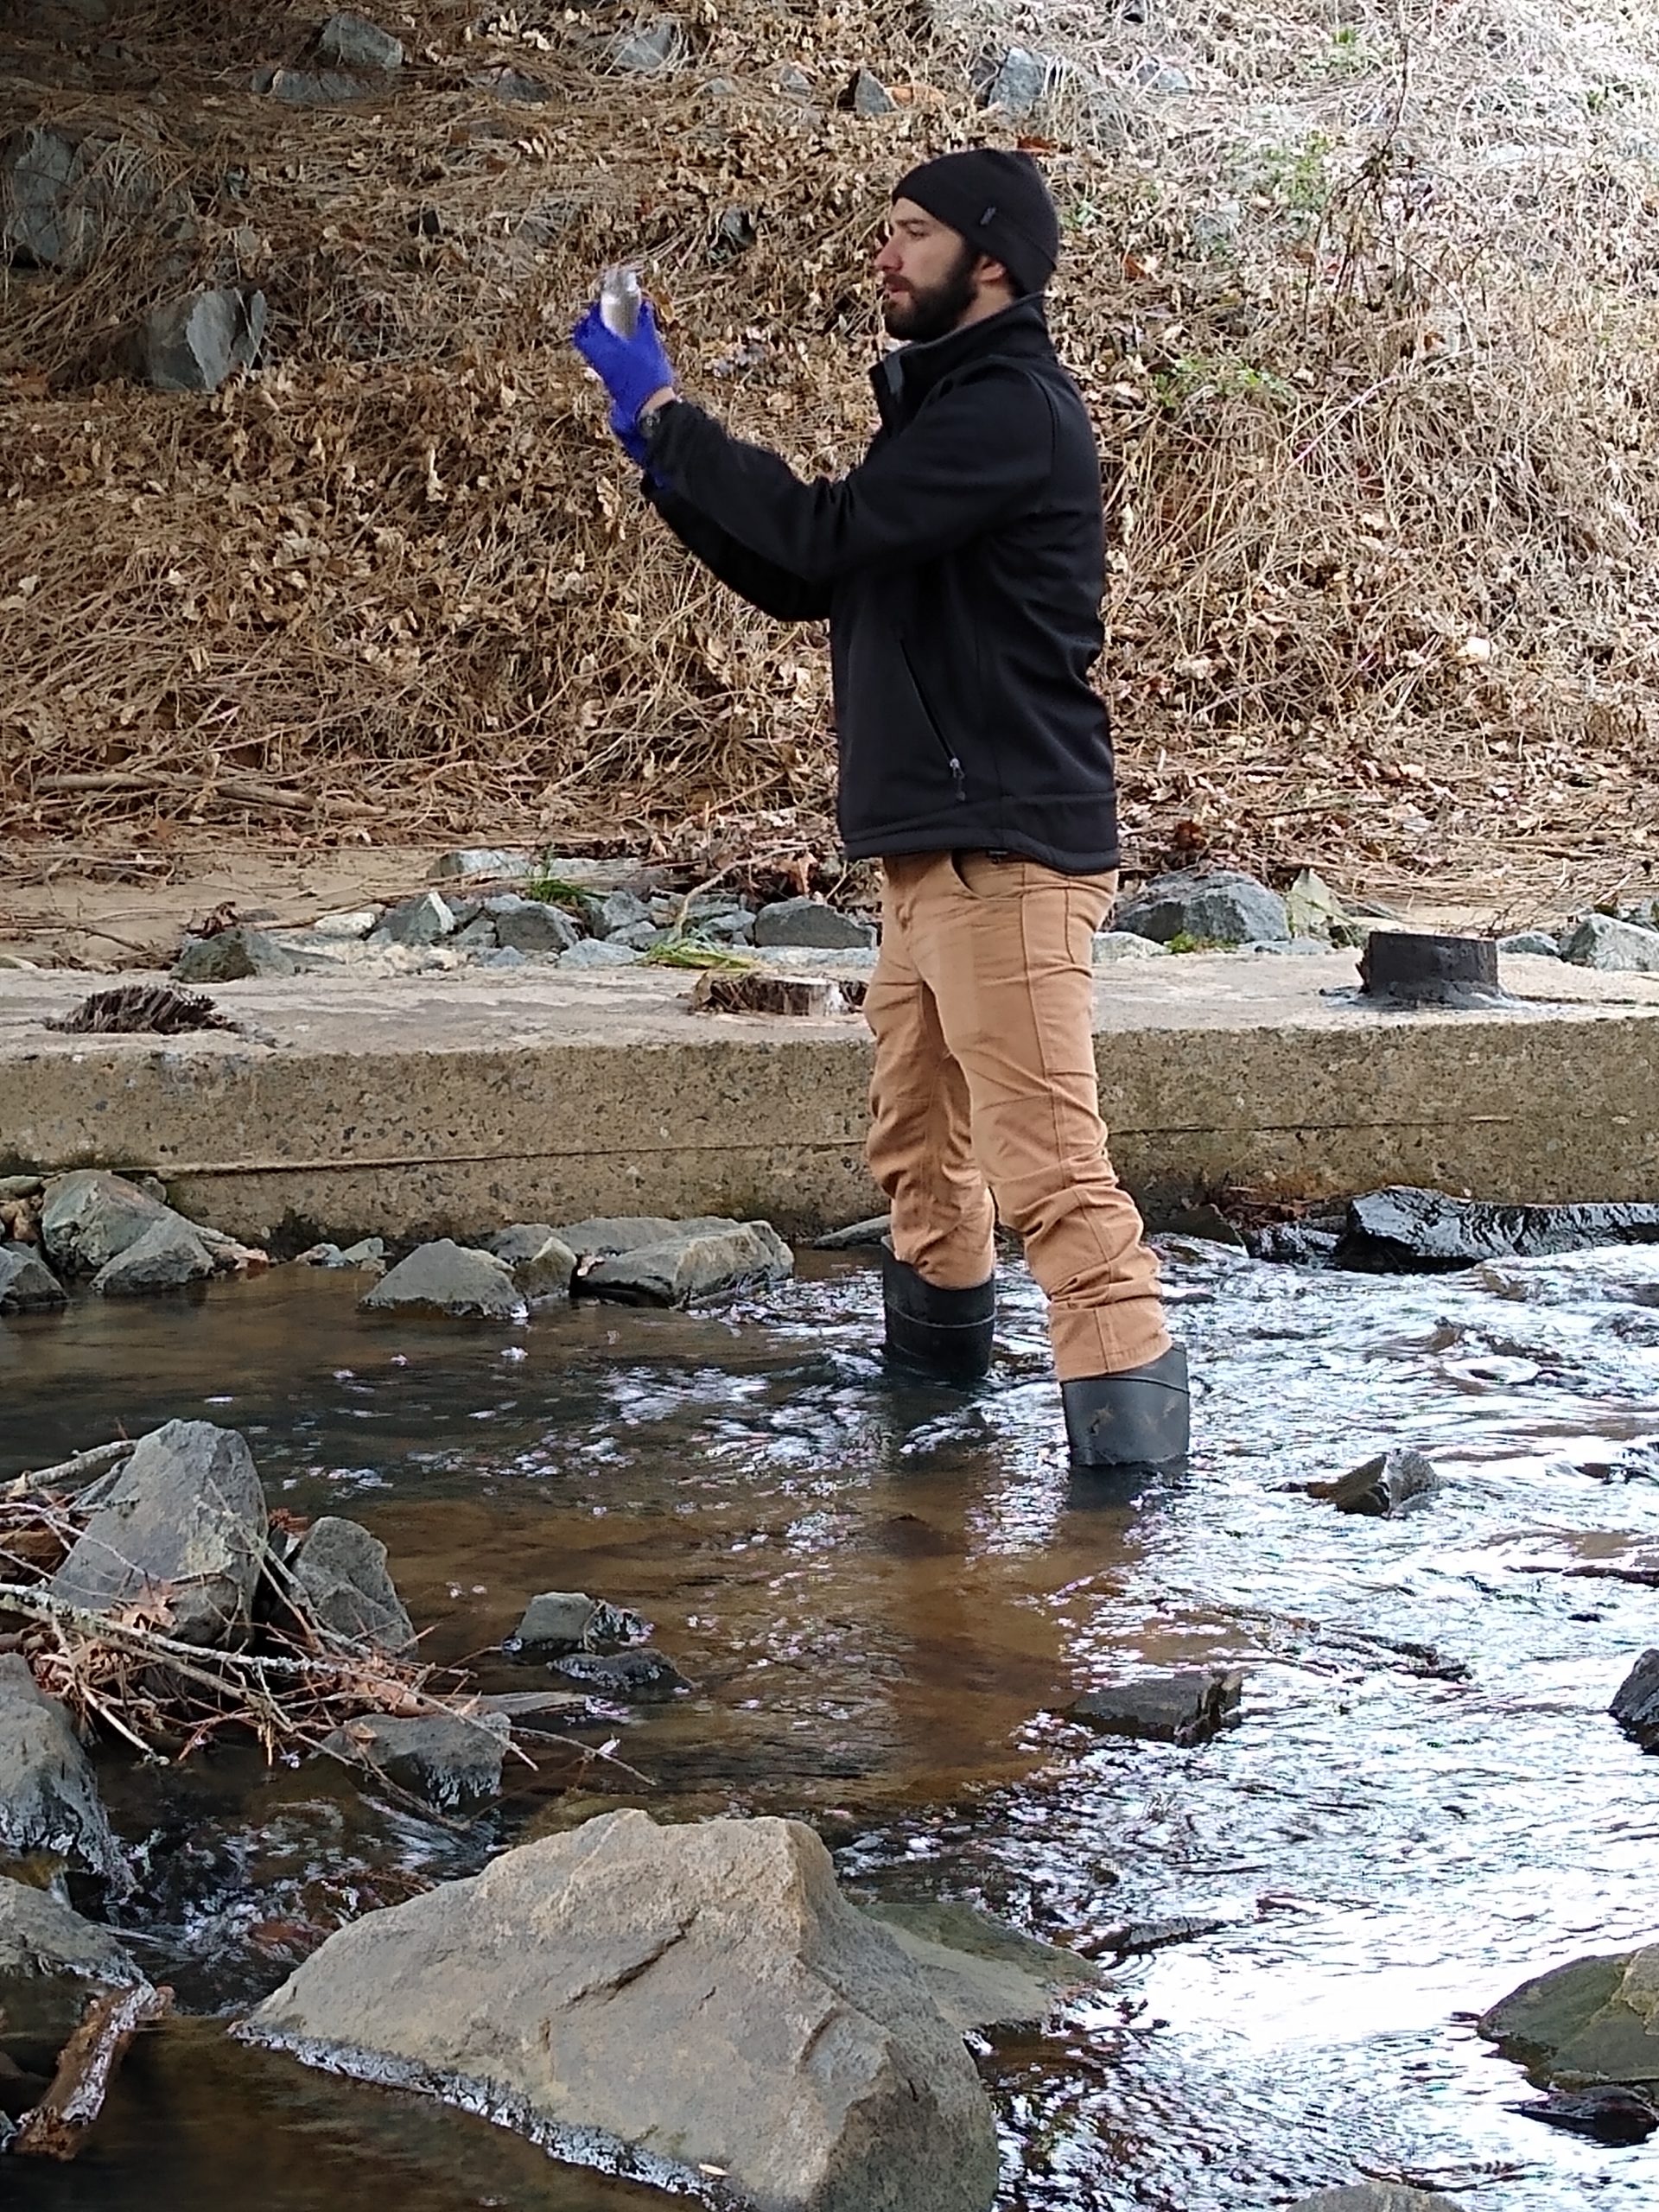 Un homme se tient dans une rivière, avec des bottes aux genoux pour se protéger de l'eau, tenant un bocal transparent pour prélever un échantillon d'eau.